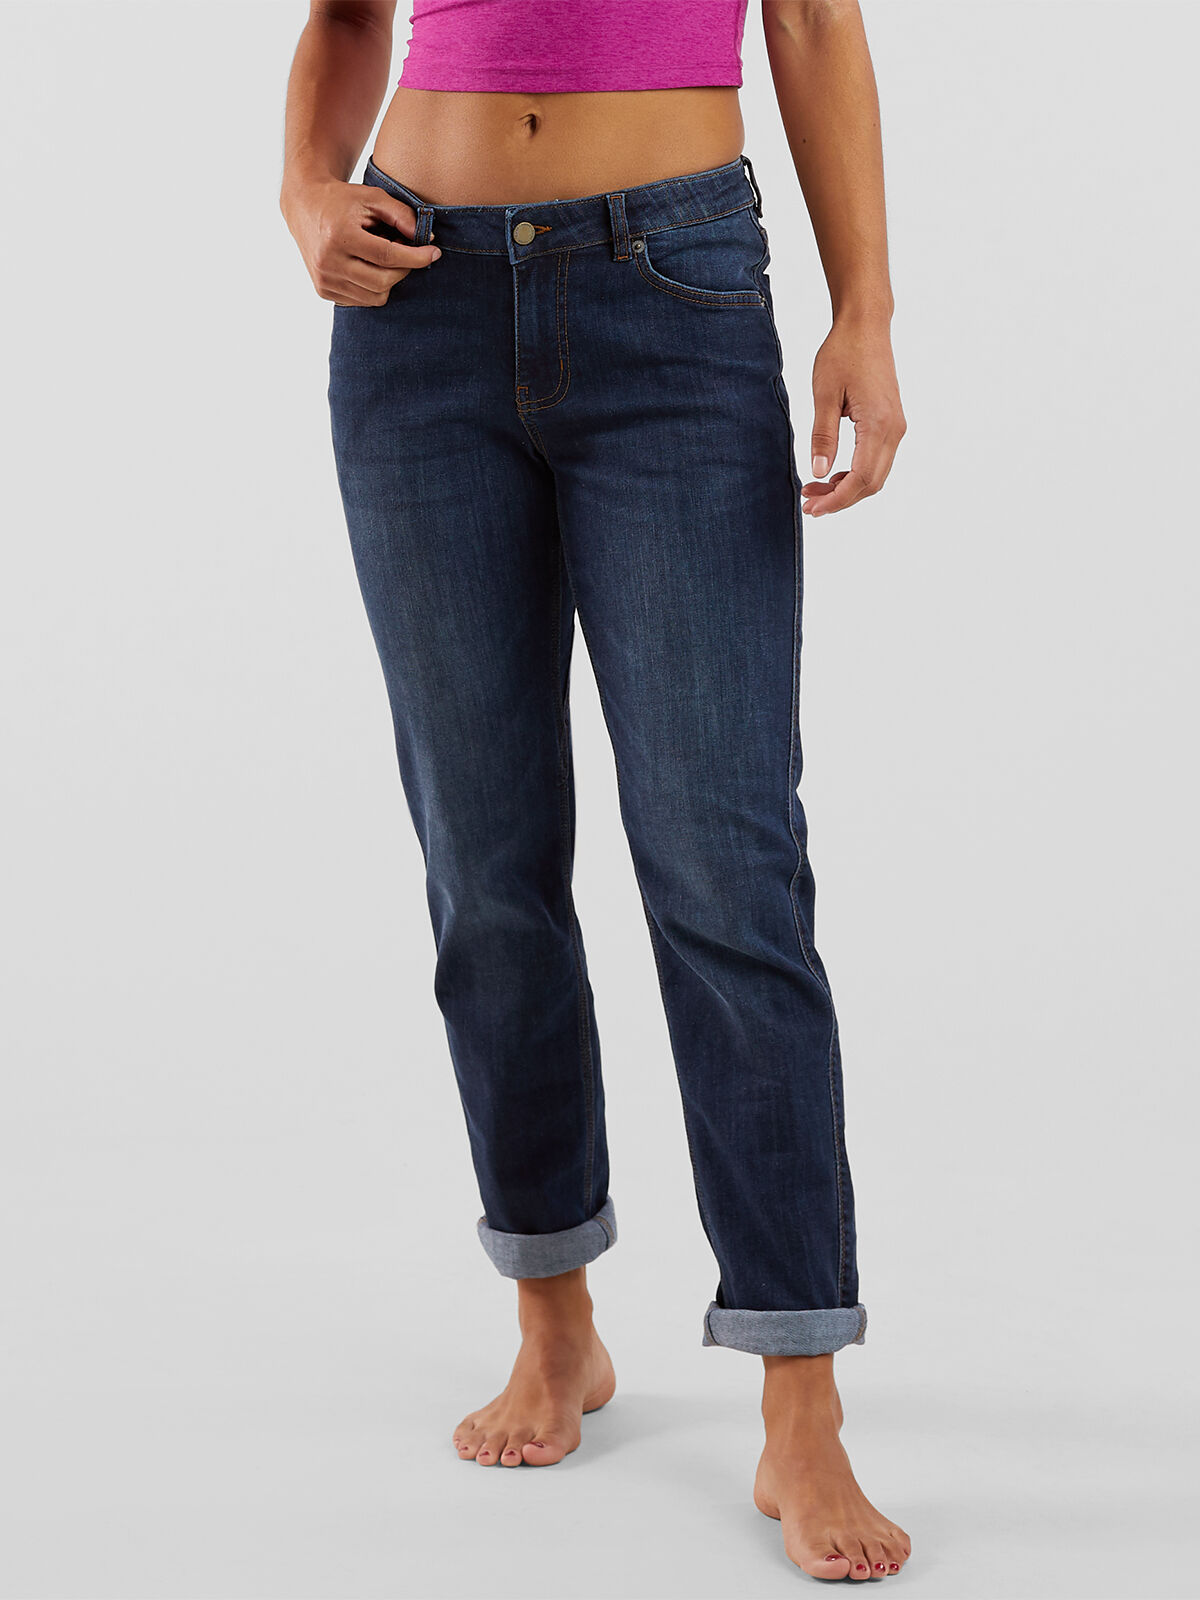 Relaxed Jeans - Light denim blue - Men | H&M US